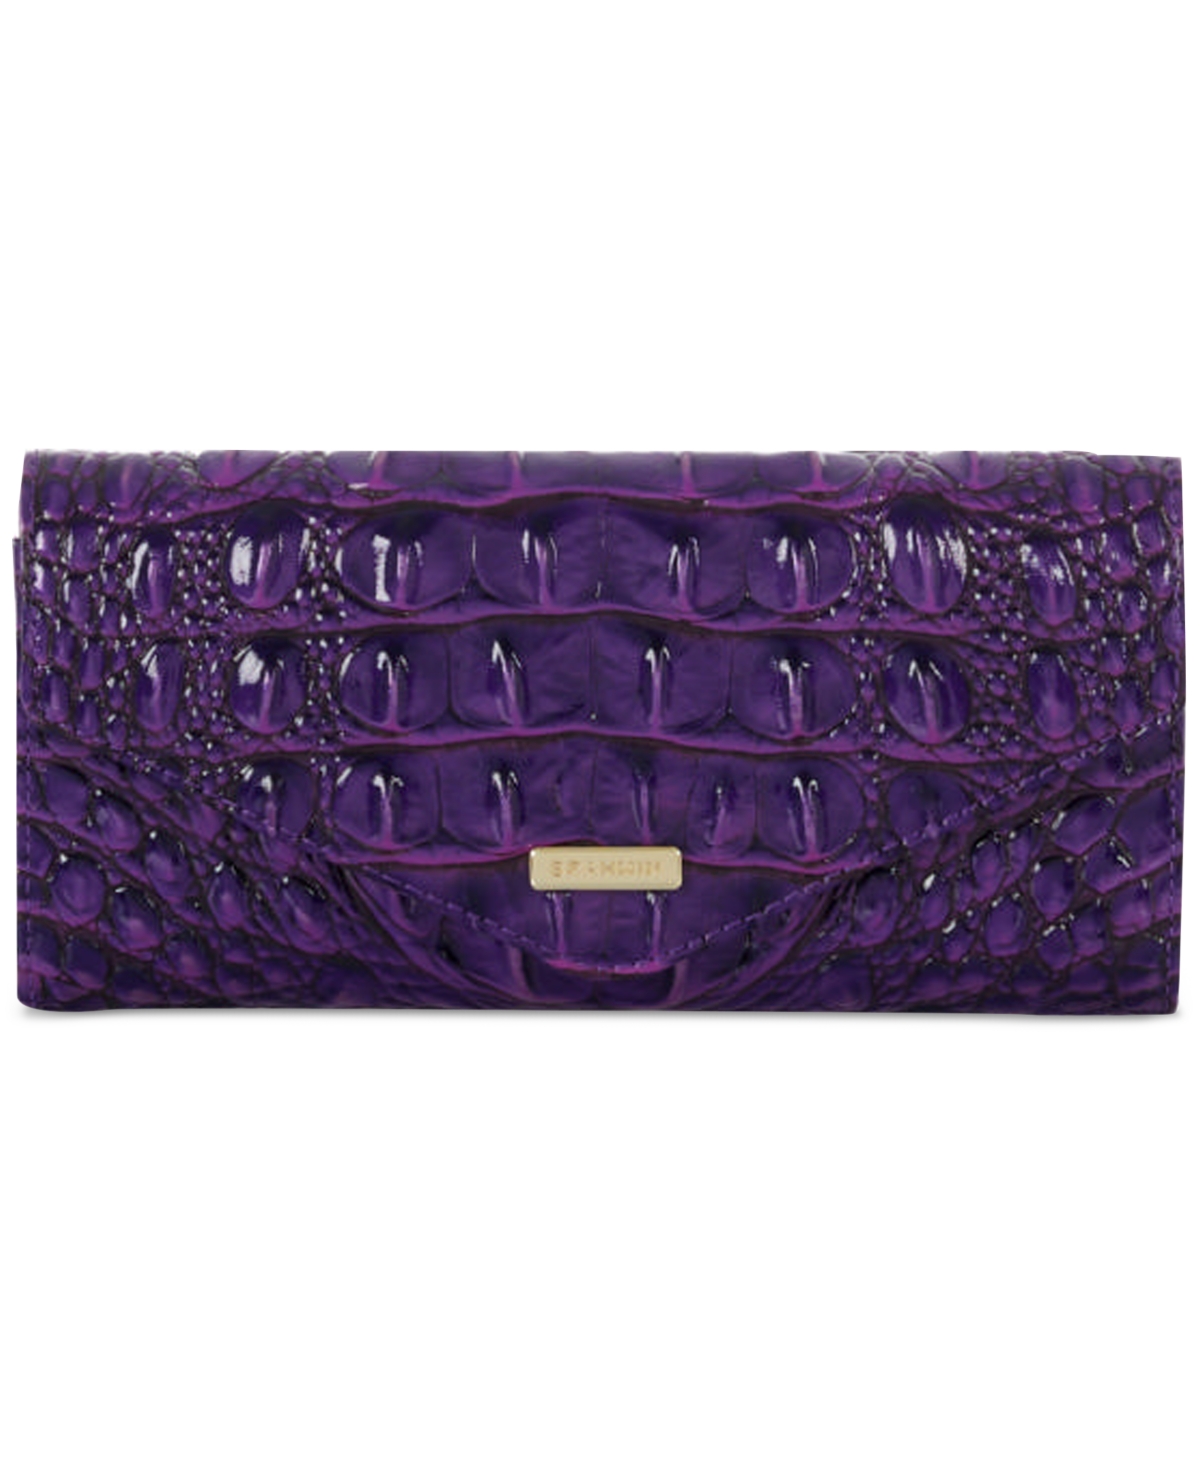 Brahmin Veronica Melbourne Embossed Leather Wallet In Royal Purple